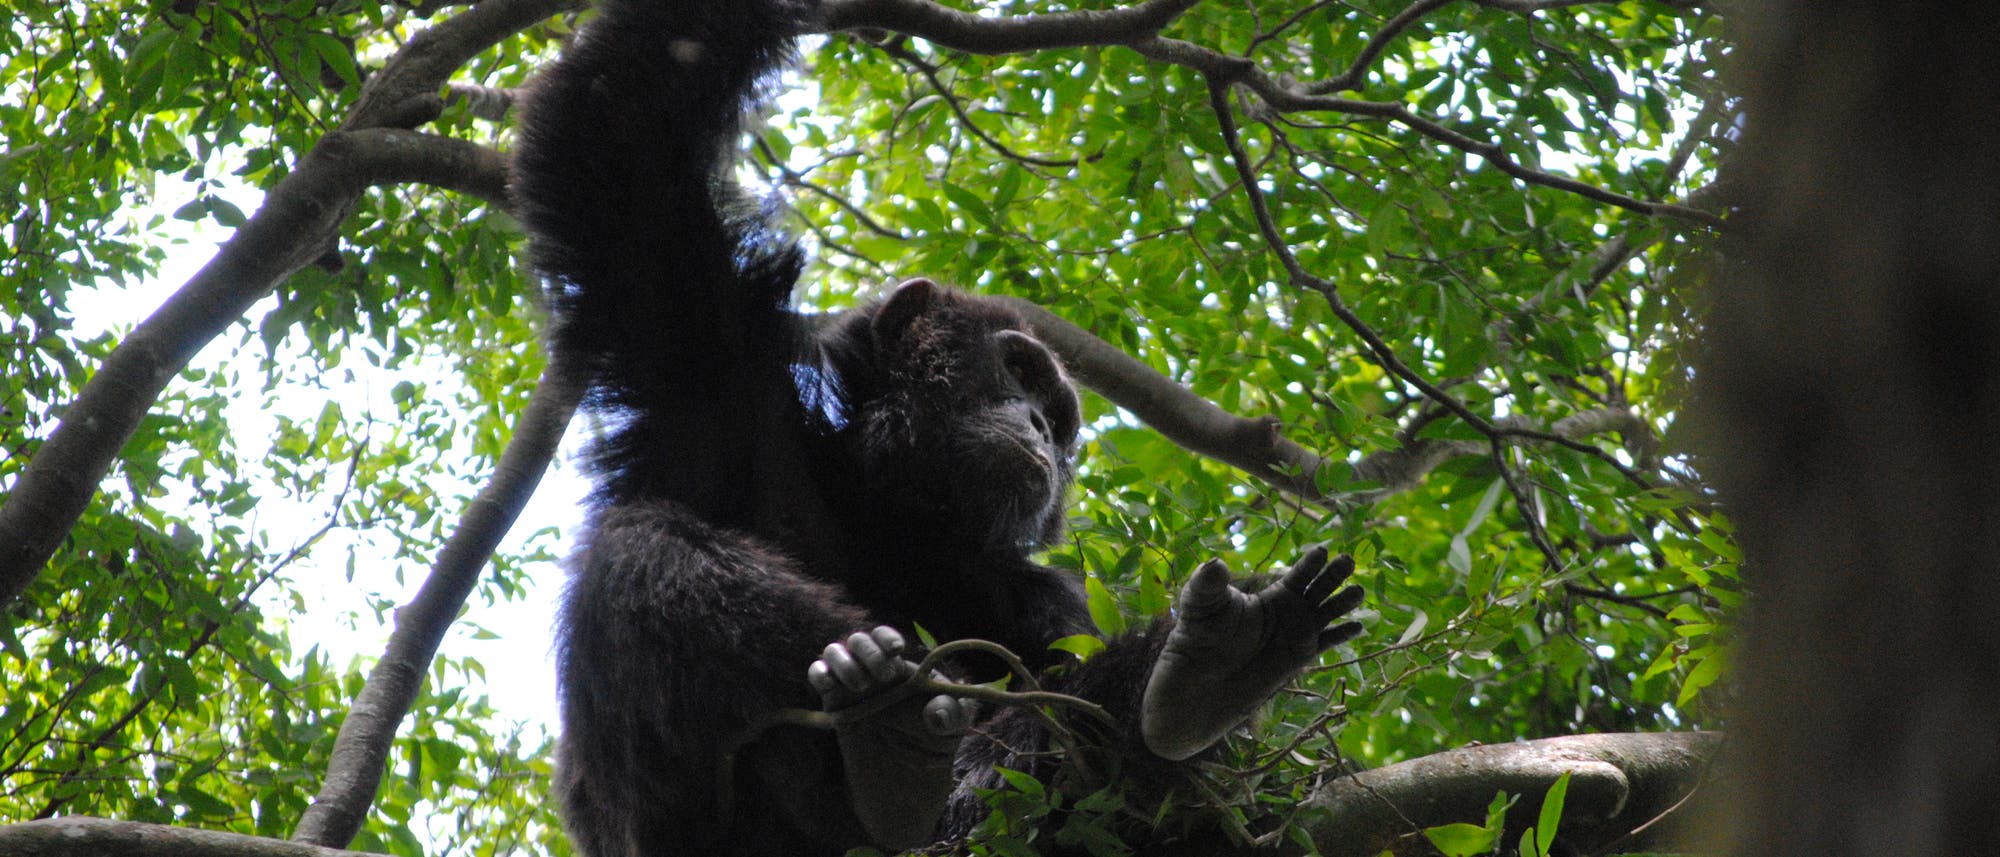 Schimpansen mögen es luftig und stabil